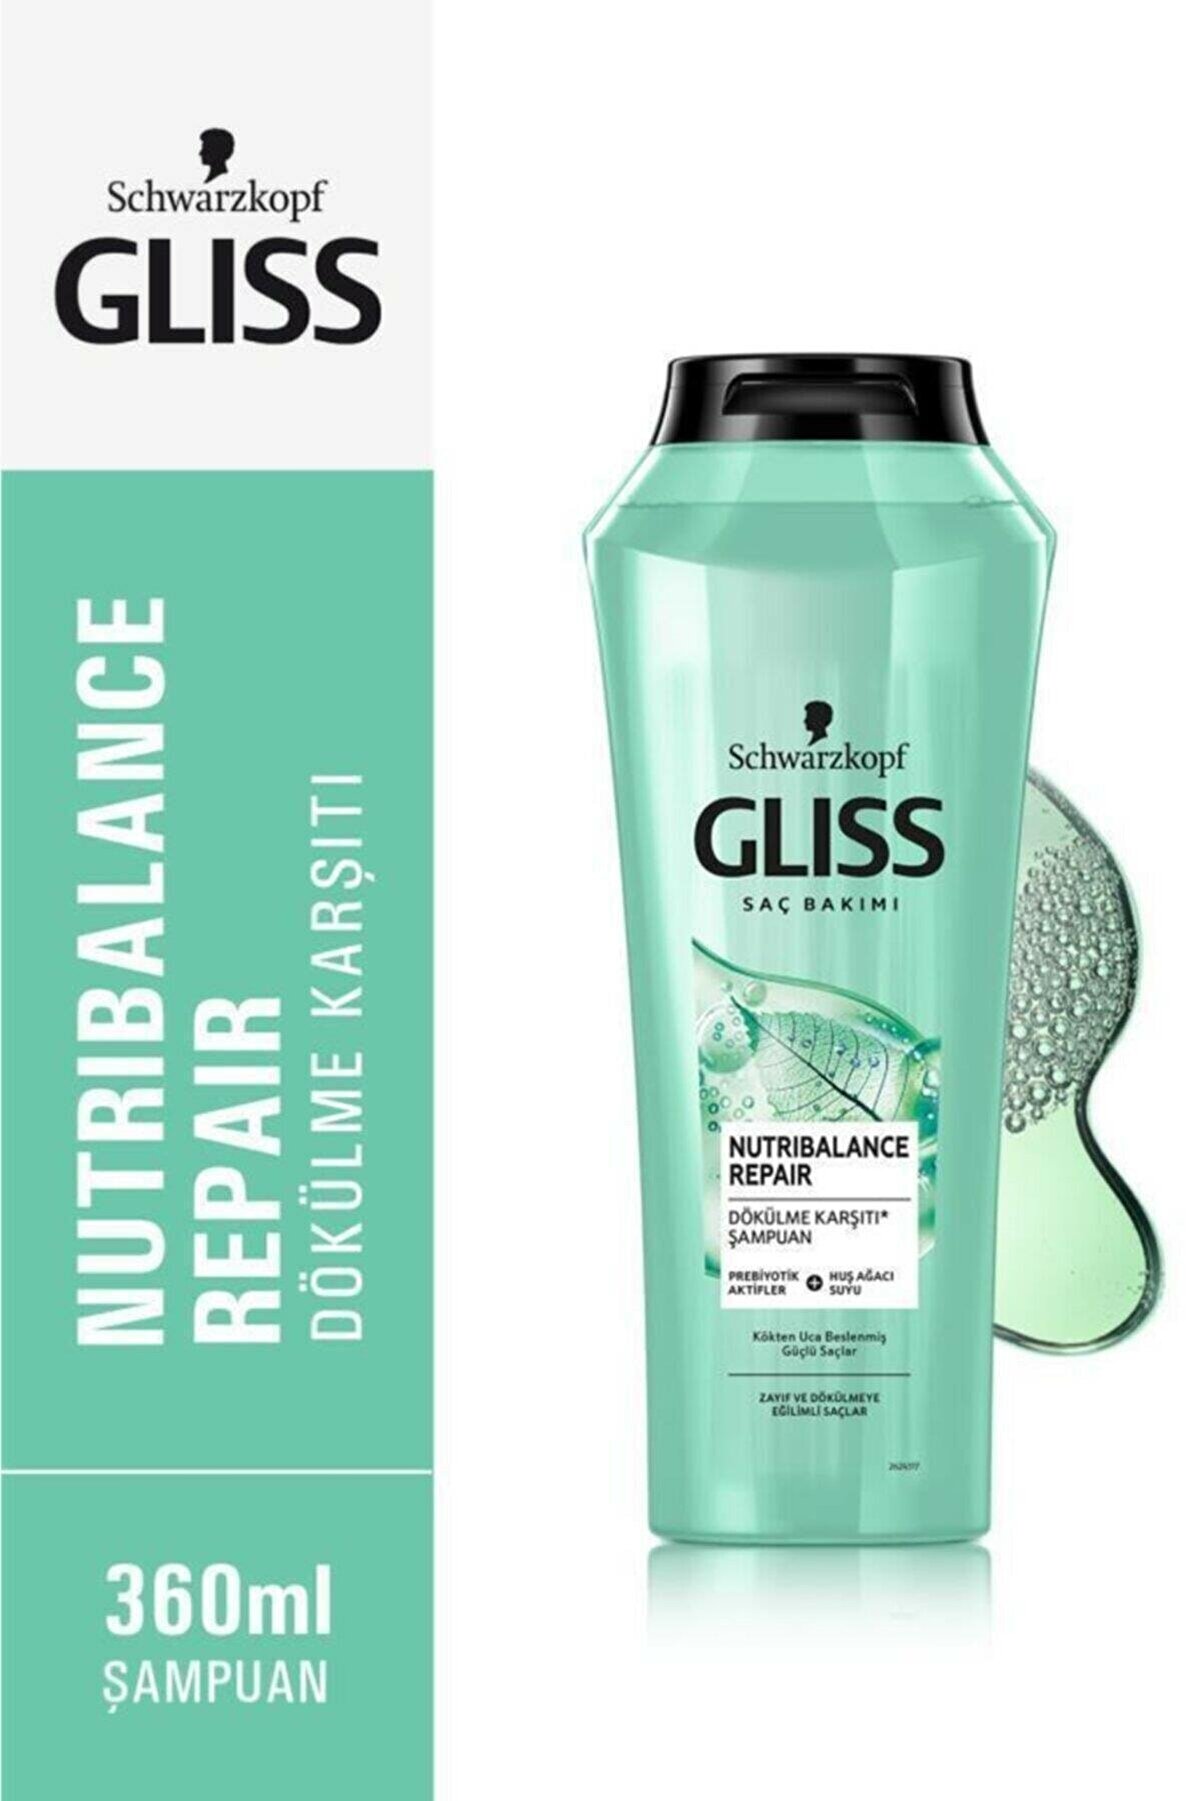 Gliss Nutribalance Repair Dökülme Karşıtı Şampuan - Prebiyotik Aktifler Ve Huş Ağacı Suyu Ile 360 ml